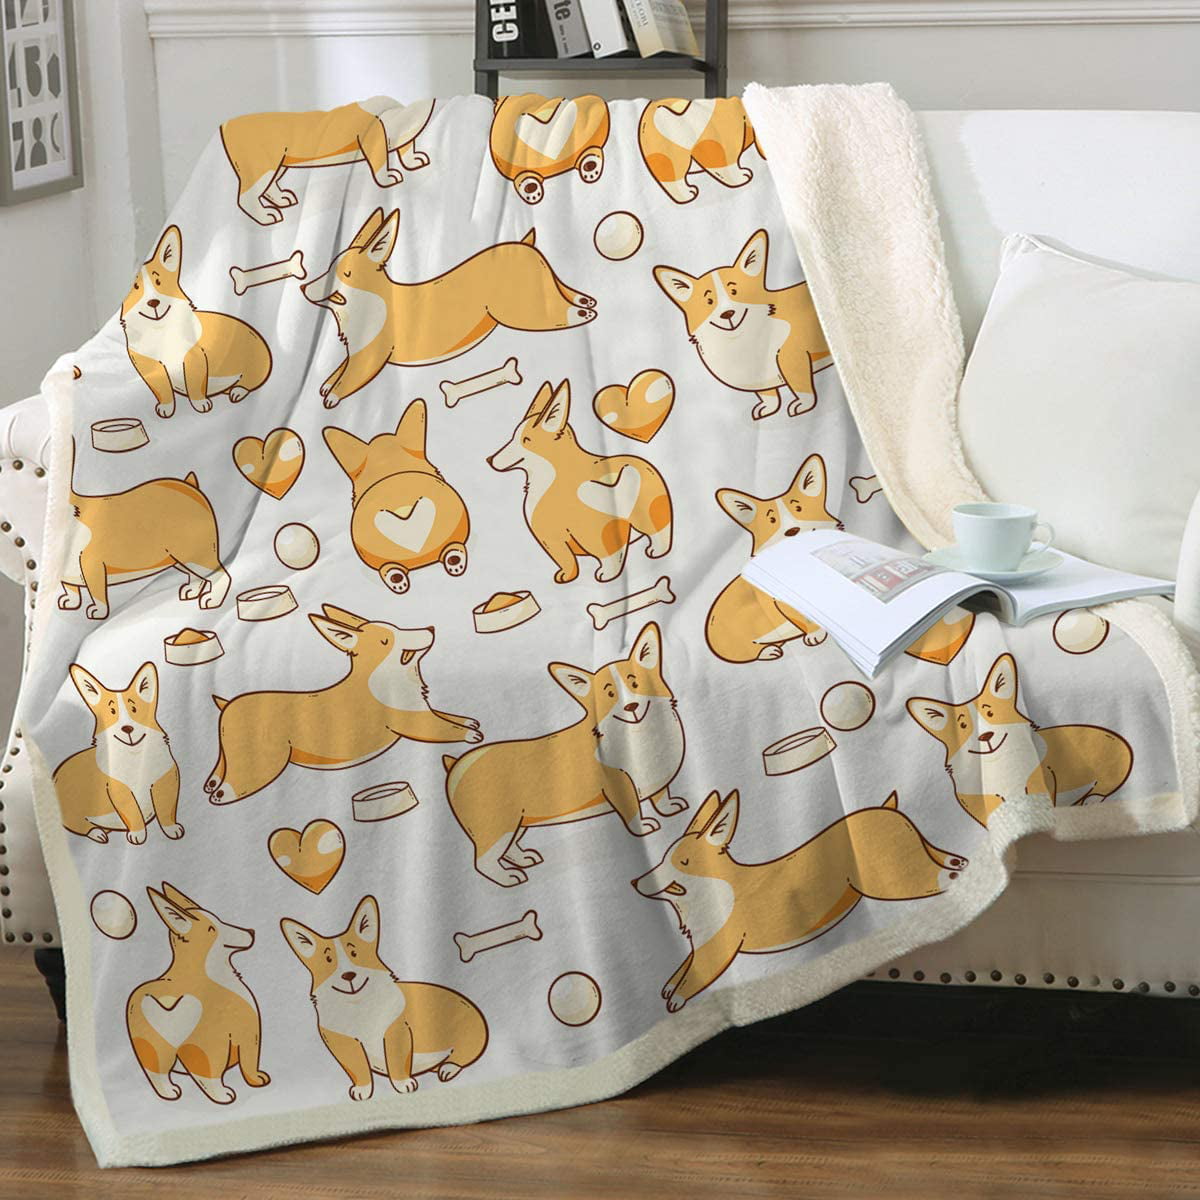 Super soft Pembroke Welsh Corgi Dog Security Blanket Plush bedspread 50 x 60 